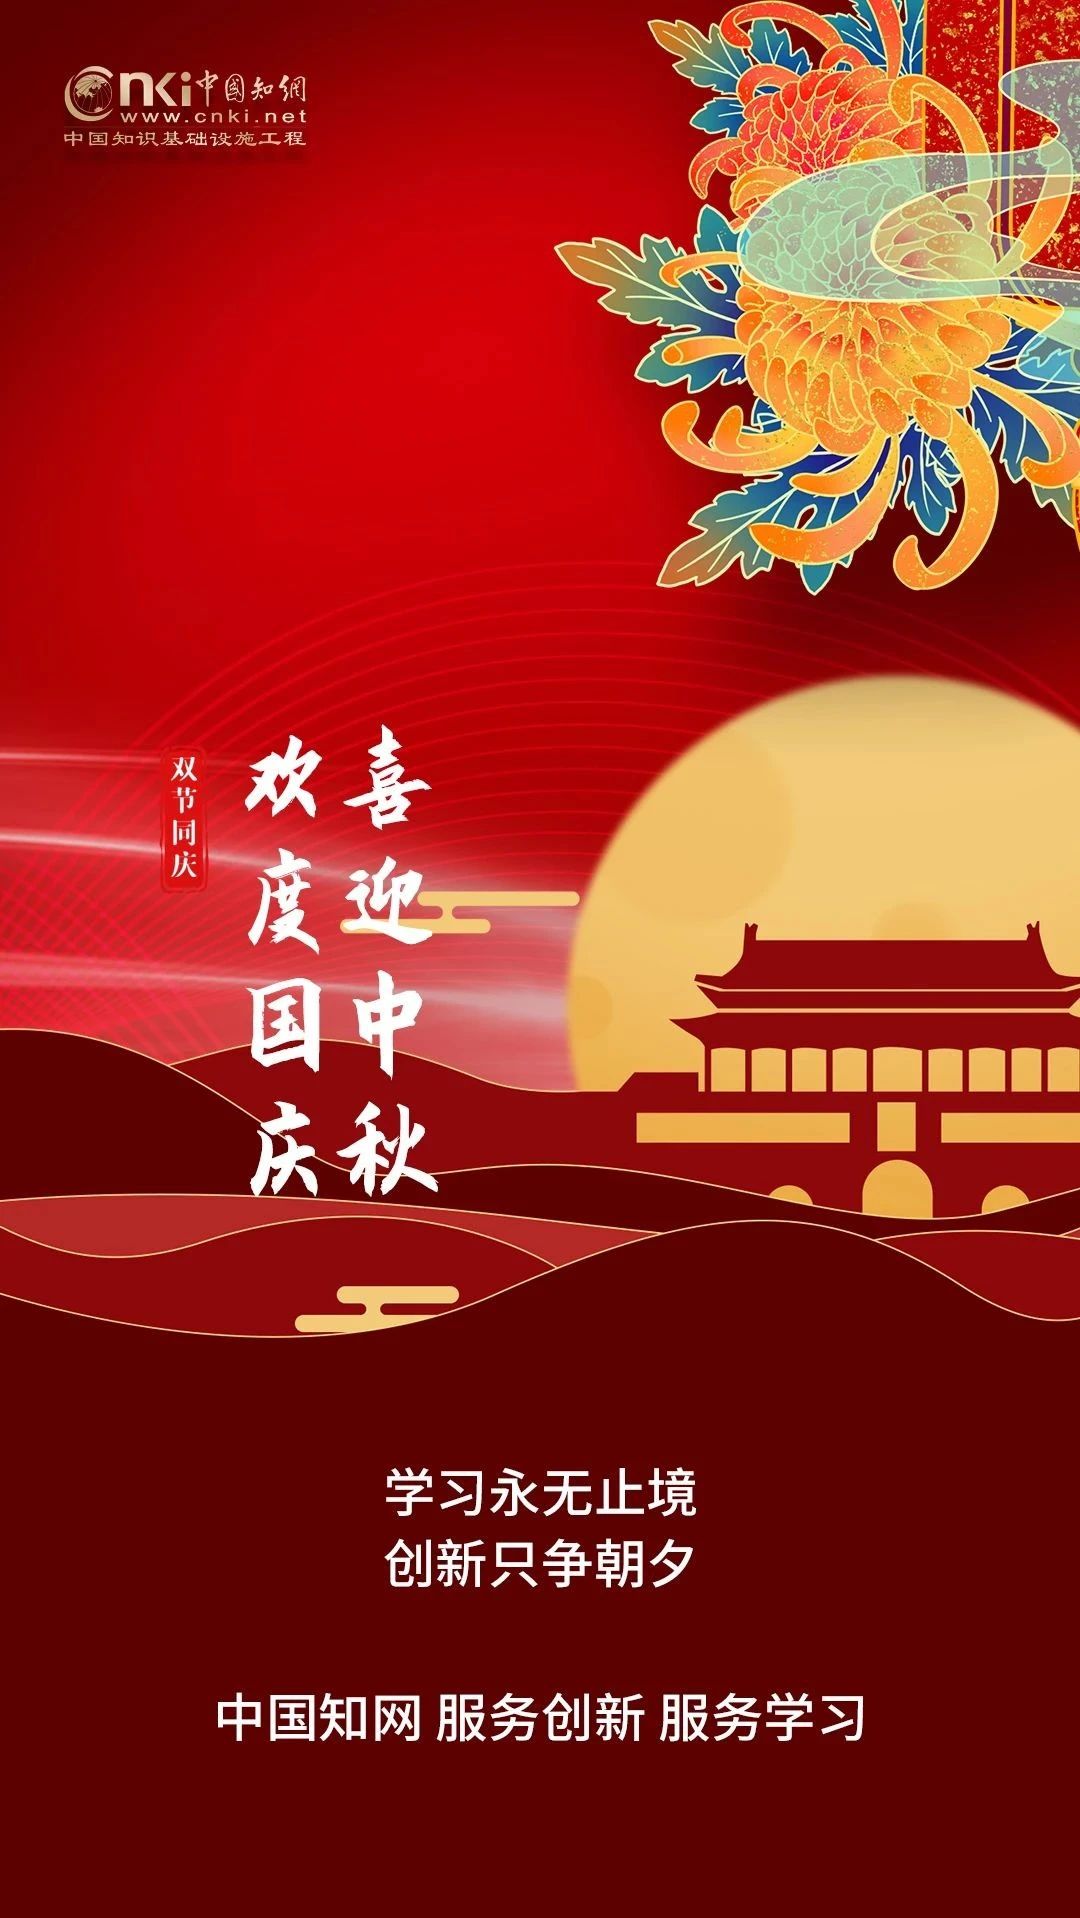 中国知网与您同赏中秋月，共贺祖国强！